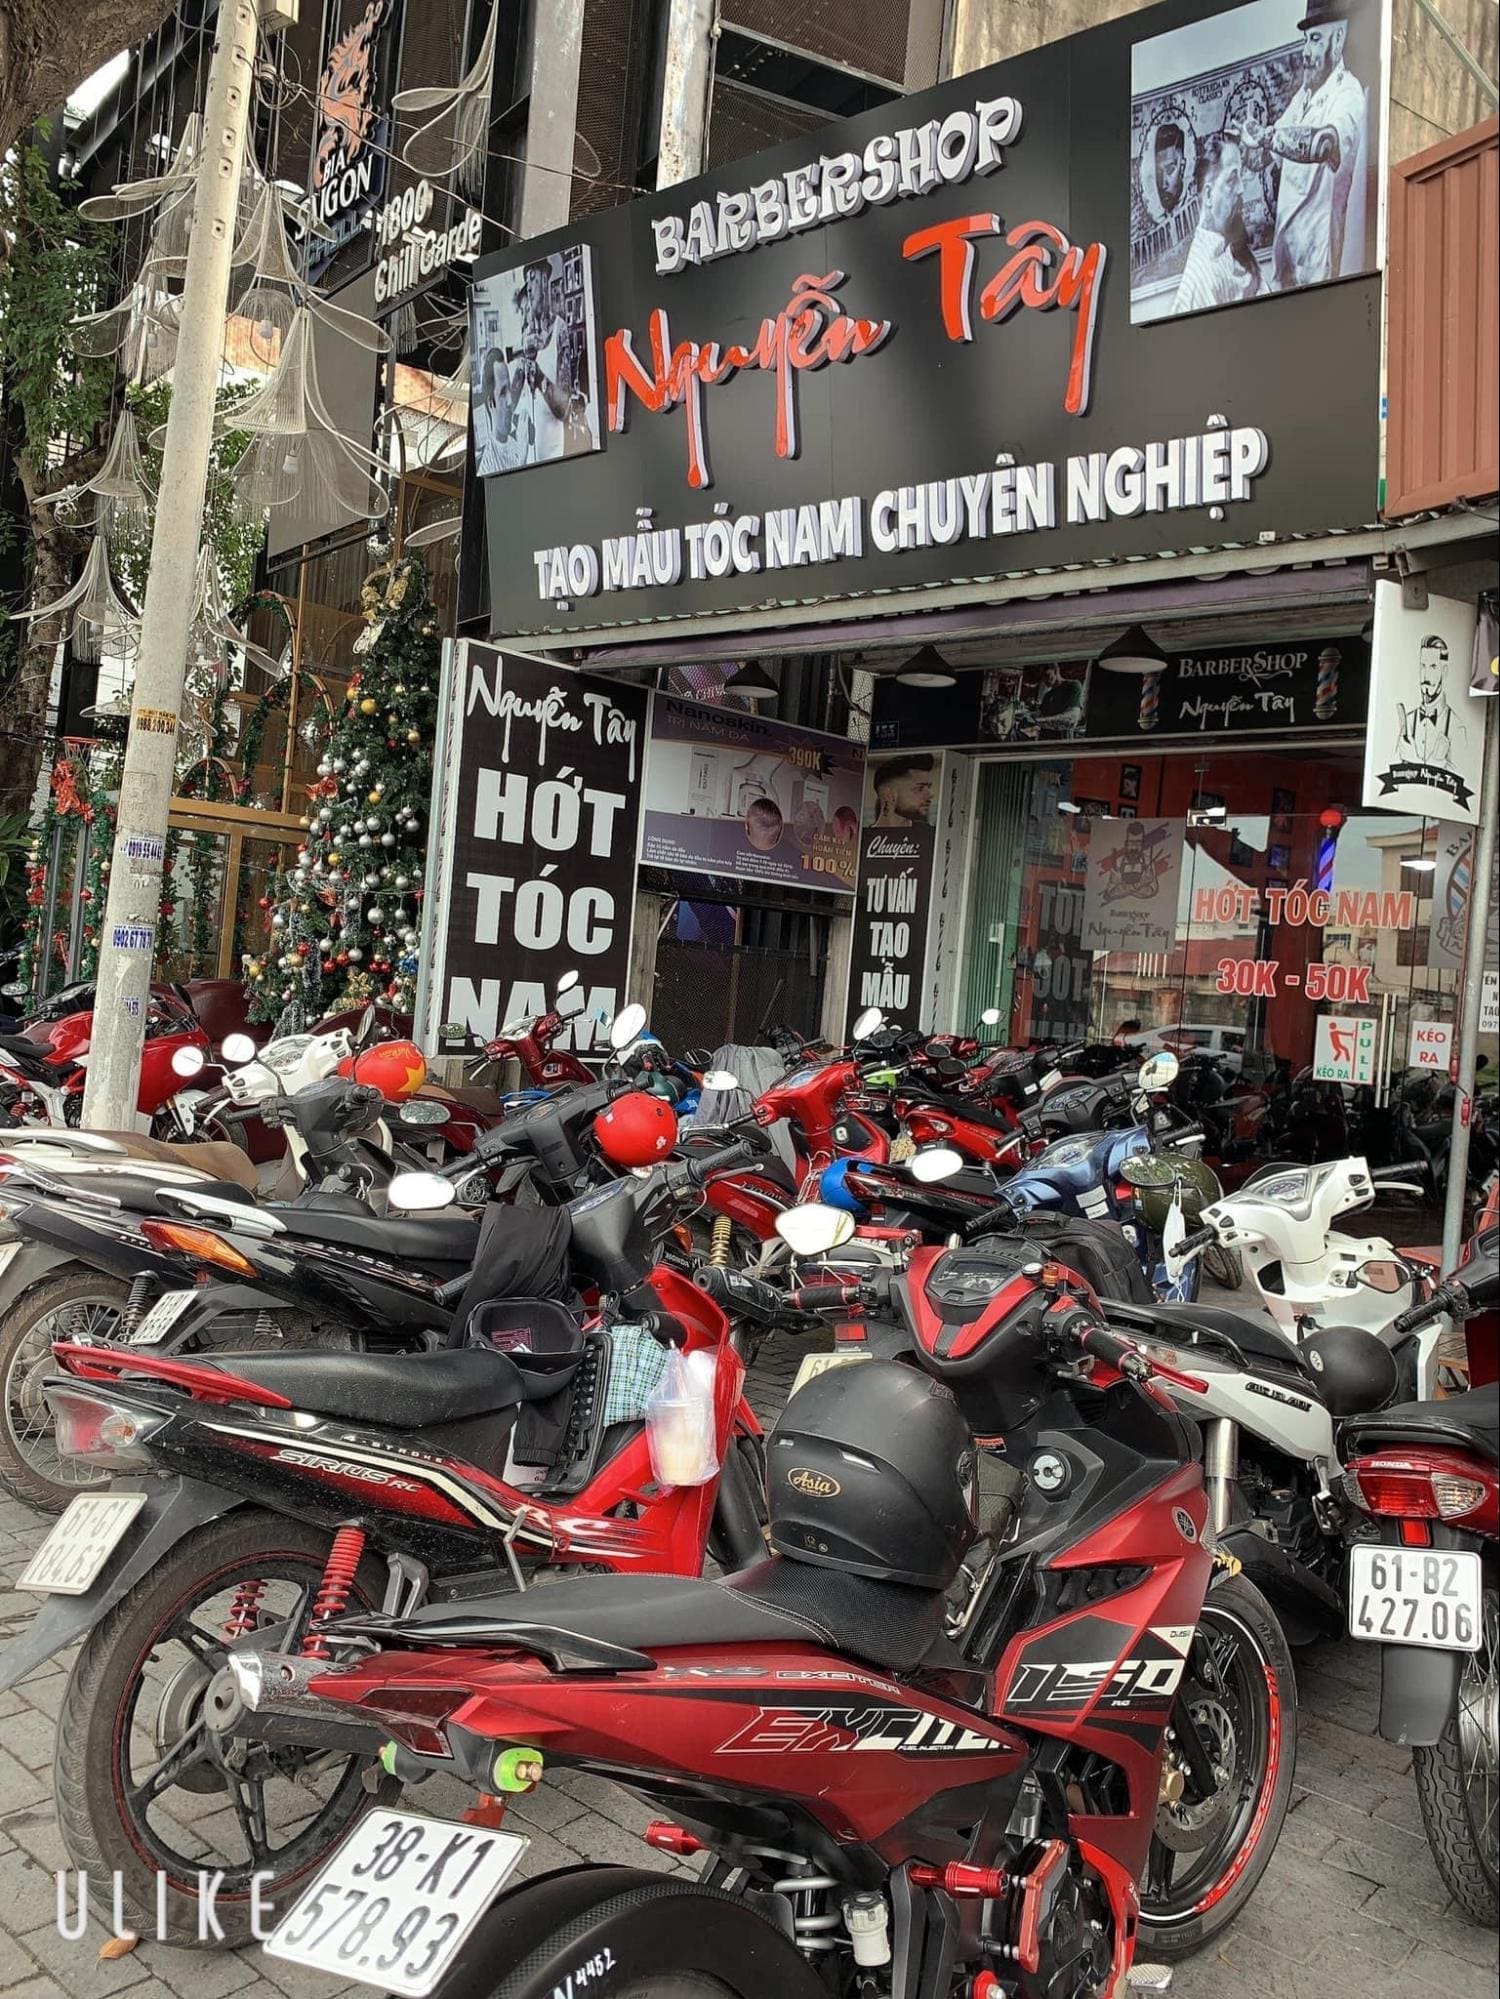 Barber Shop Nguyễn Tây - Tiệm Cắt Tóc Nam Cực Chất Tại Bình Dương